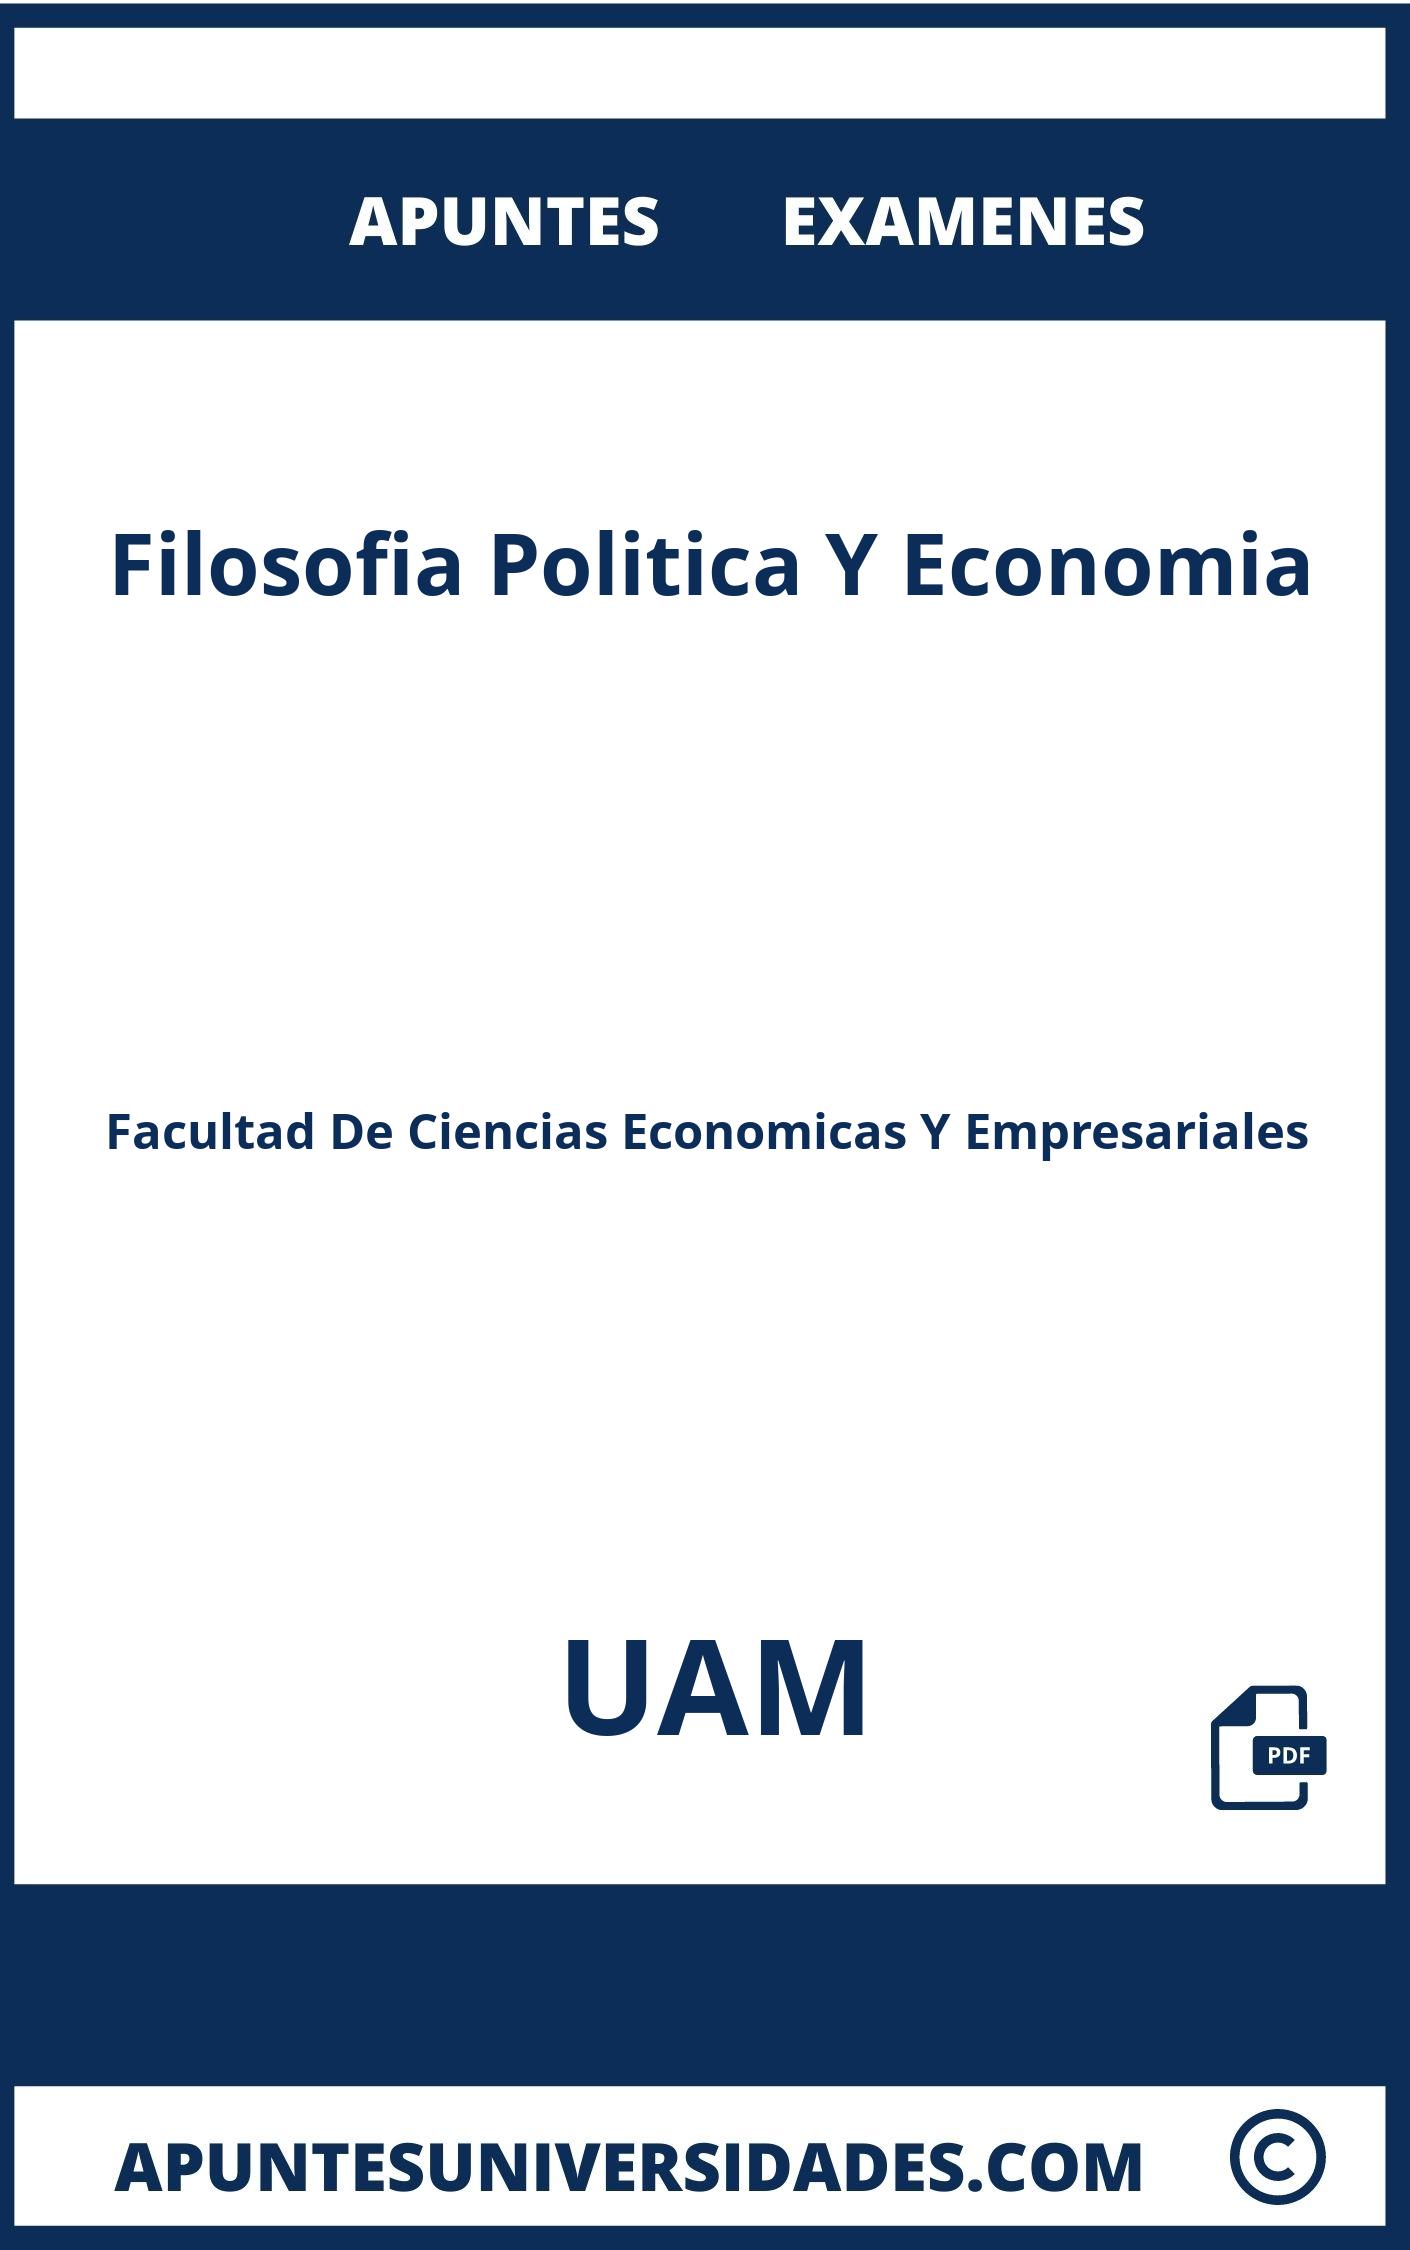 Examenes Filosofia Politica Y Economia UAM y Apuntes